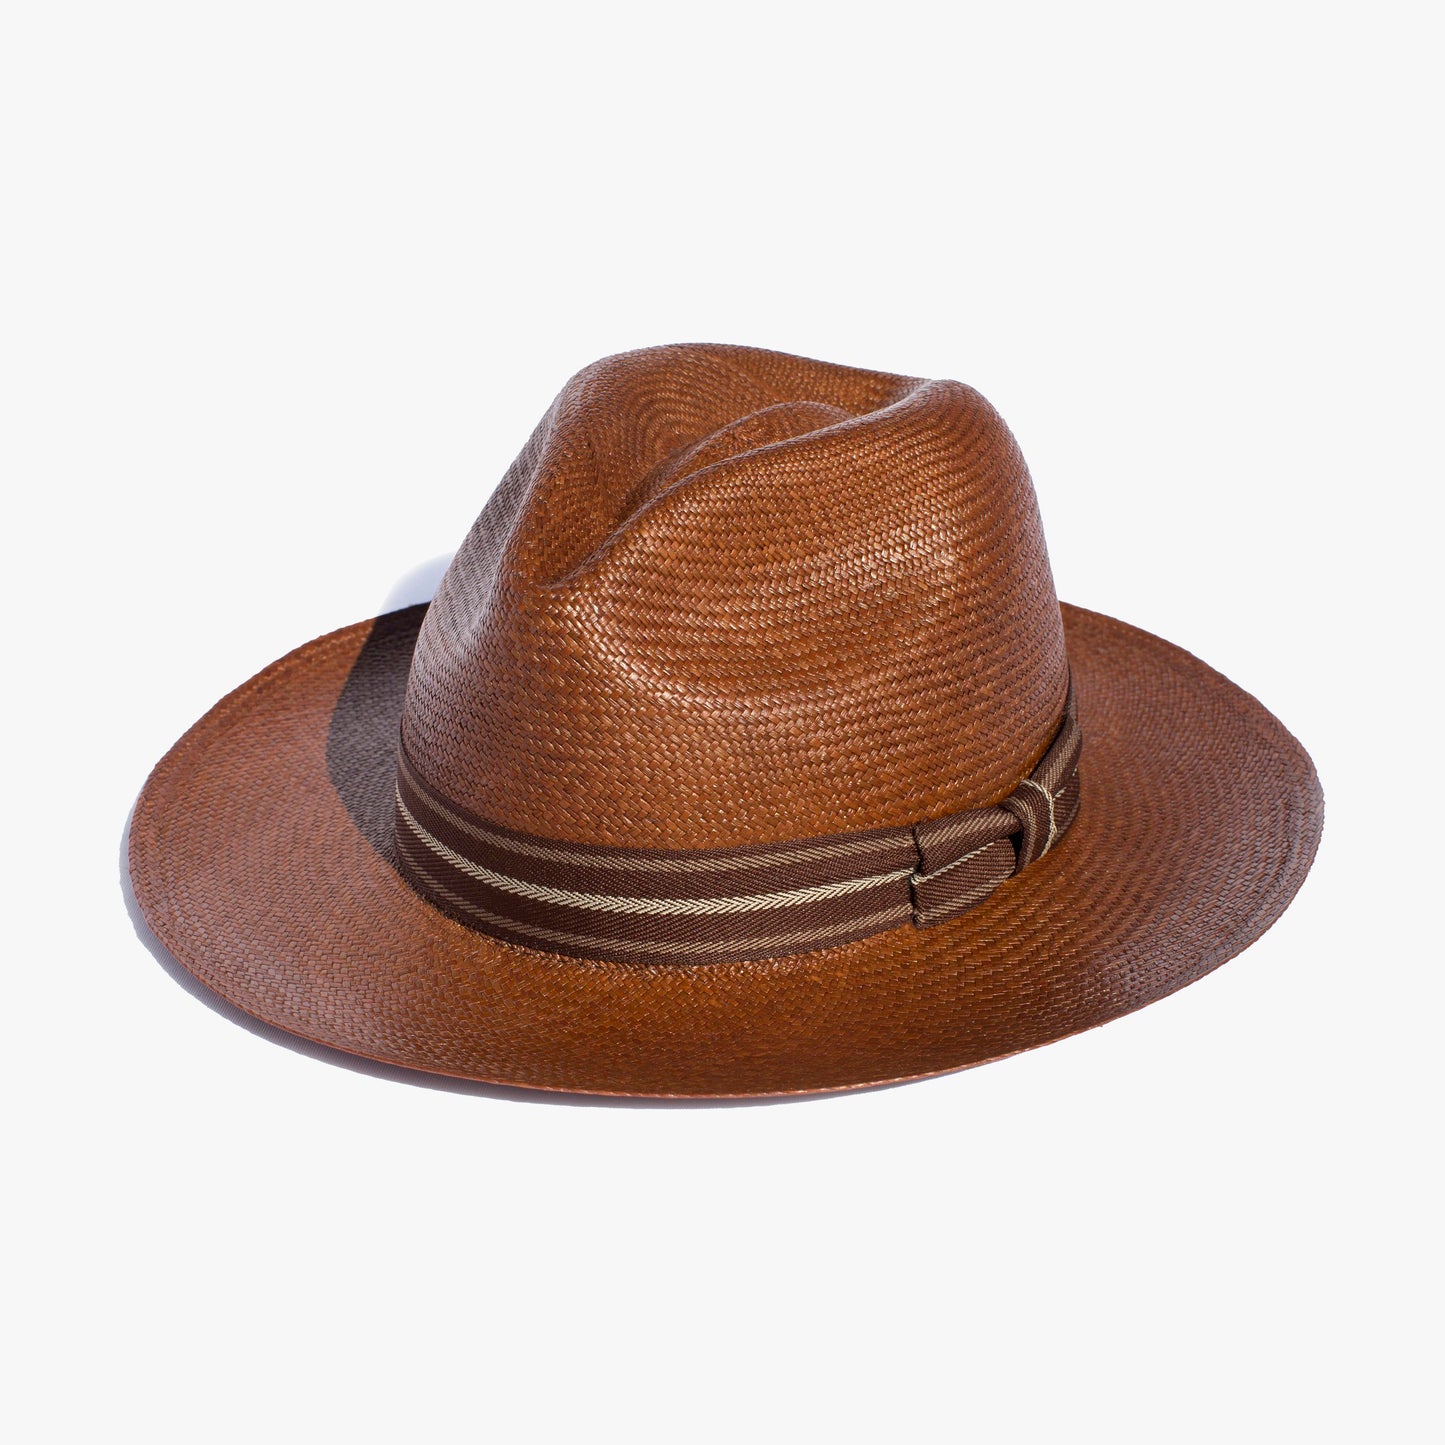 Bolivar Panama Hat